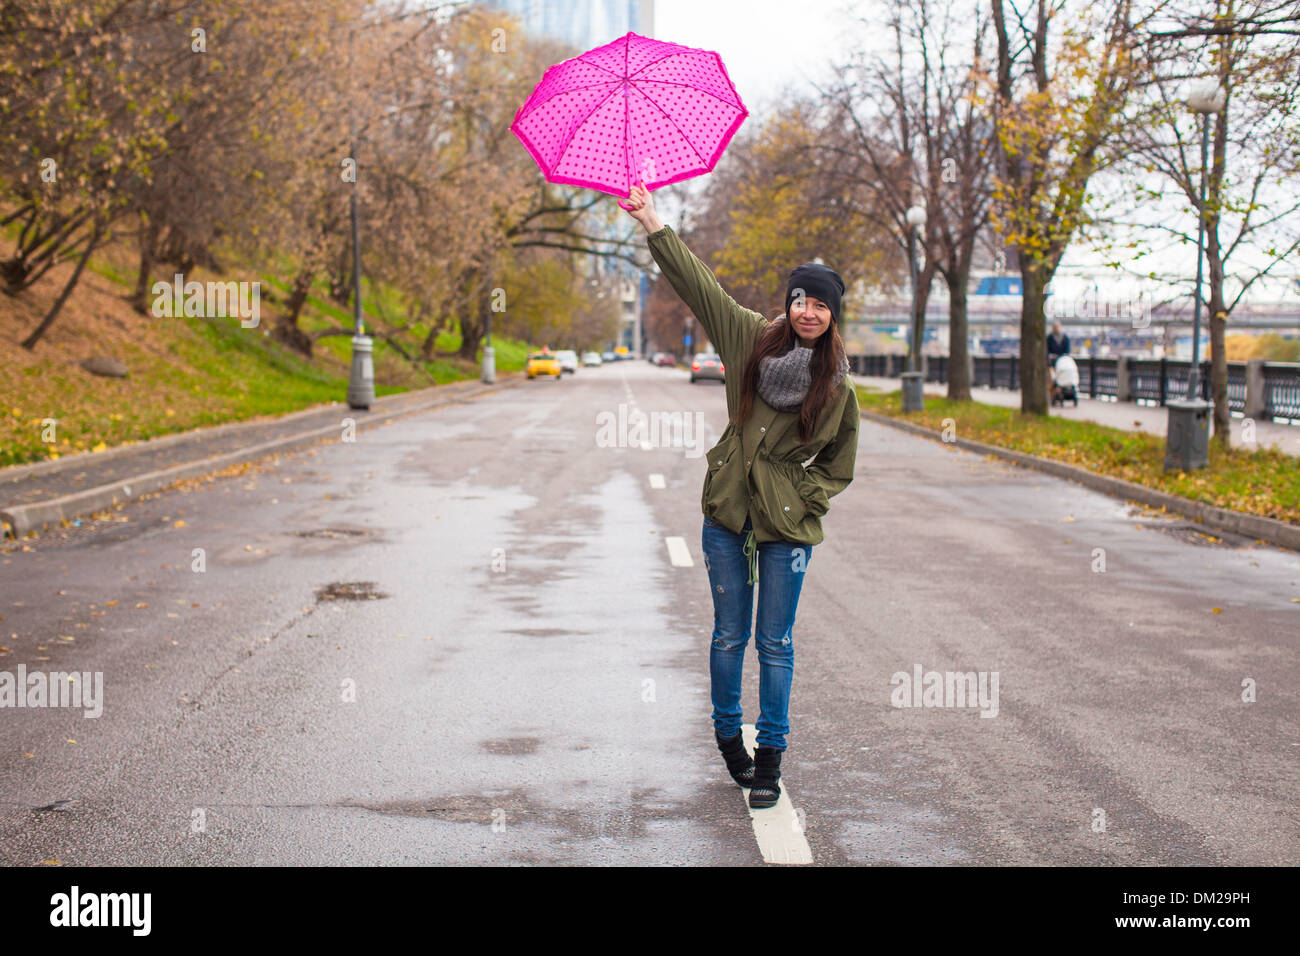 Junge Frau Mit Regenschirm Im Regnerischen Herbsttag Stockfotografie Alamy